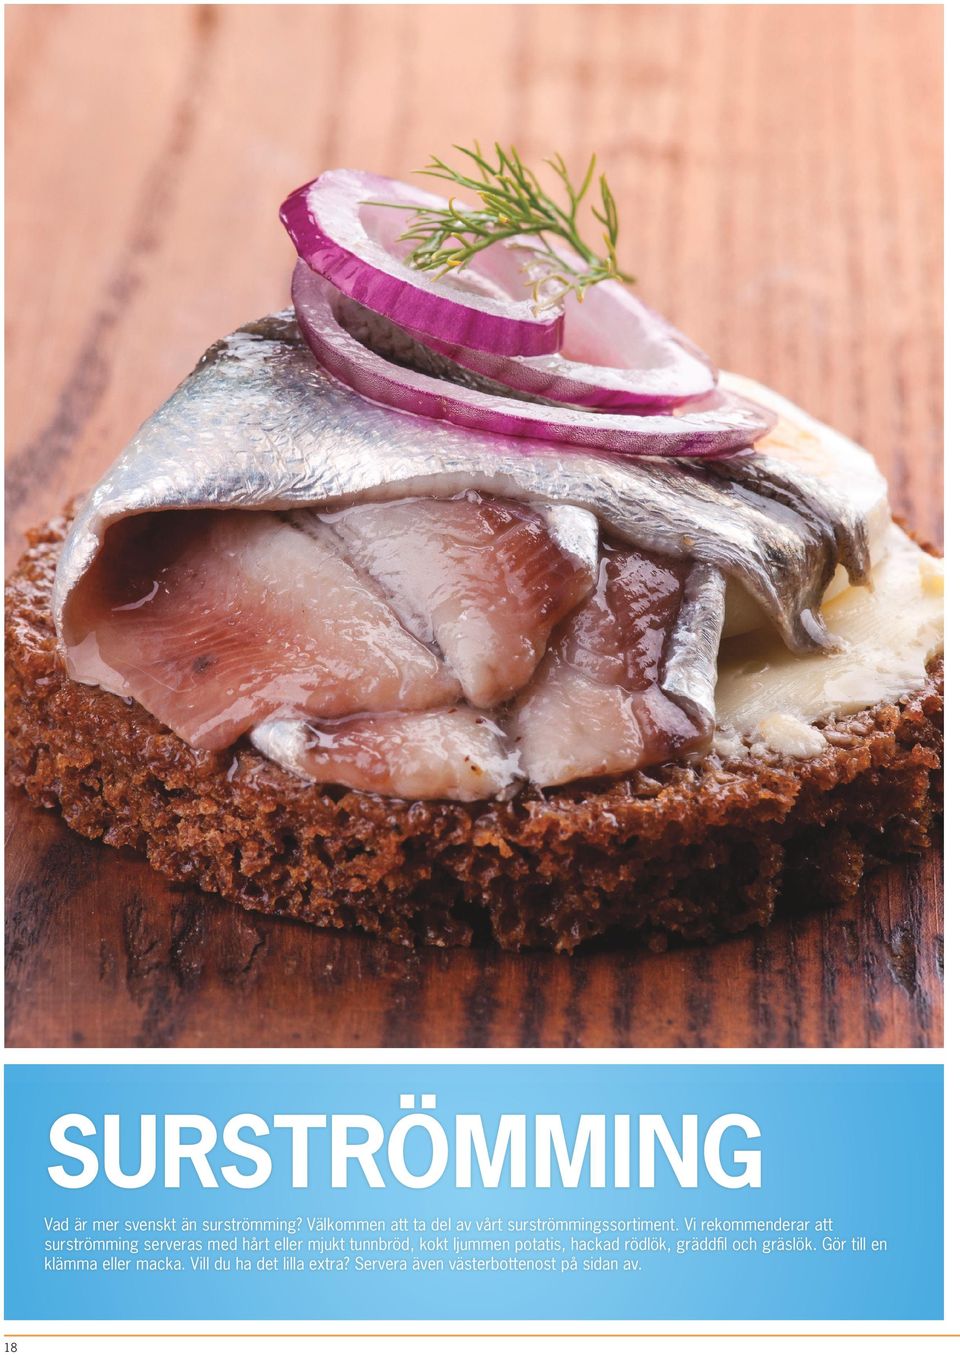 Vi rekommenderar att surströmming serveras med hårt eller mjukt tunnbröd, kokt ljummen